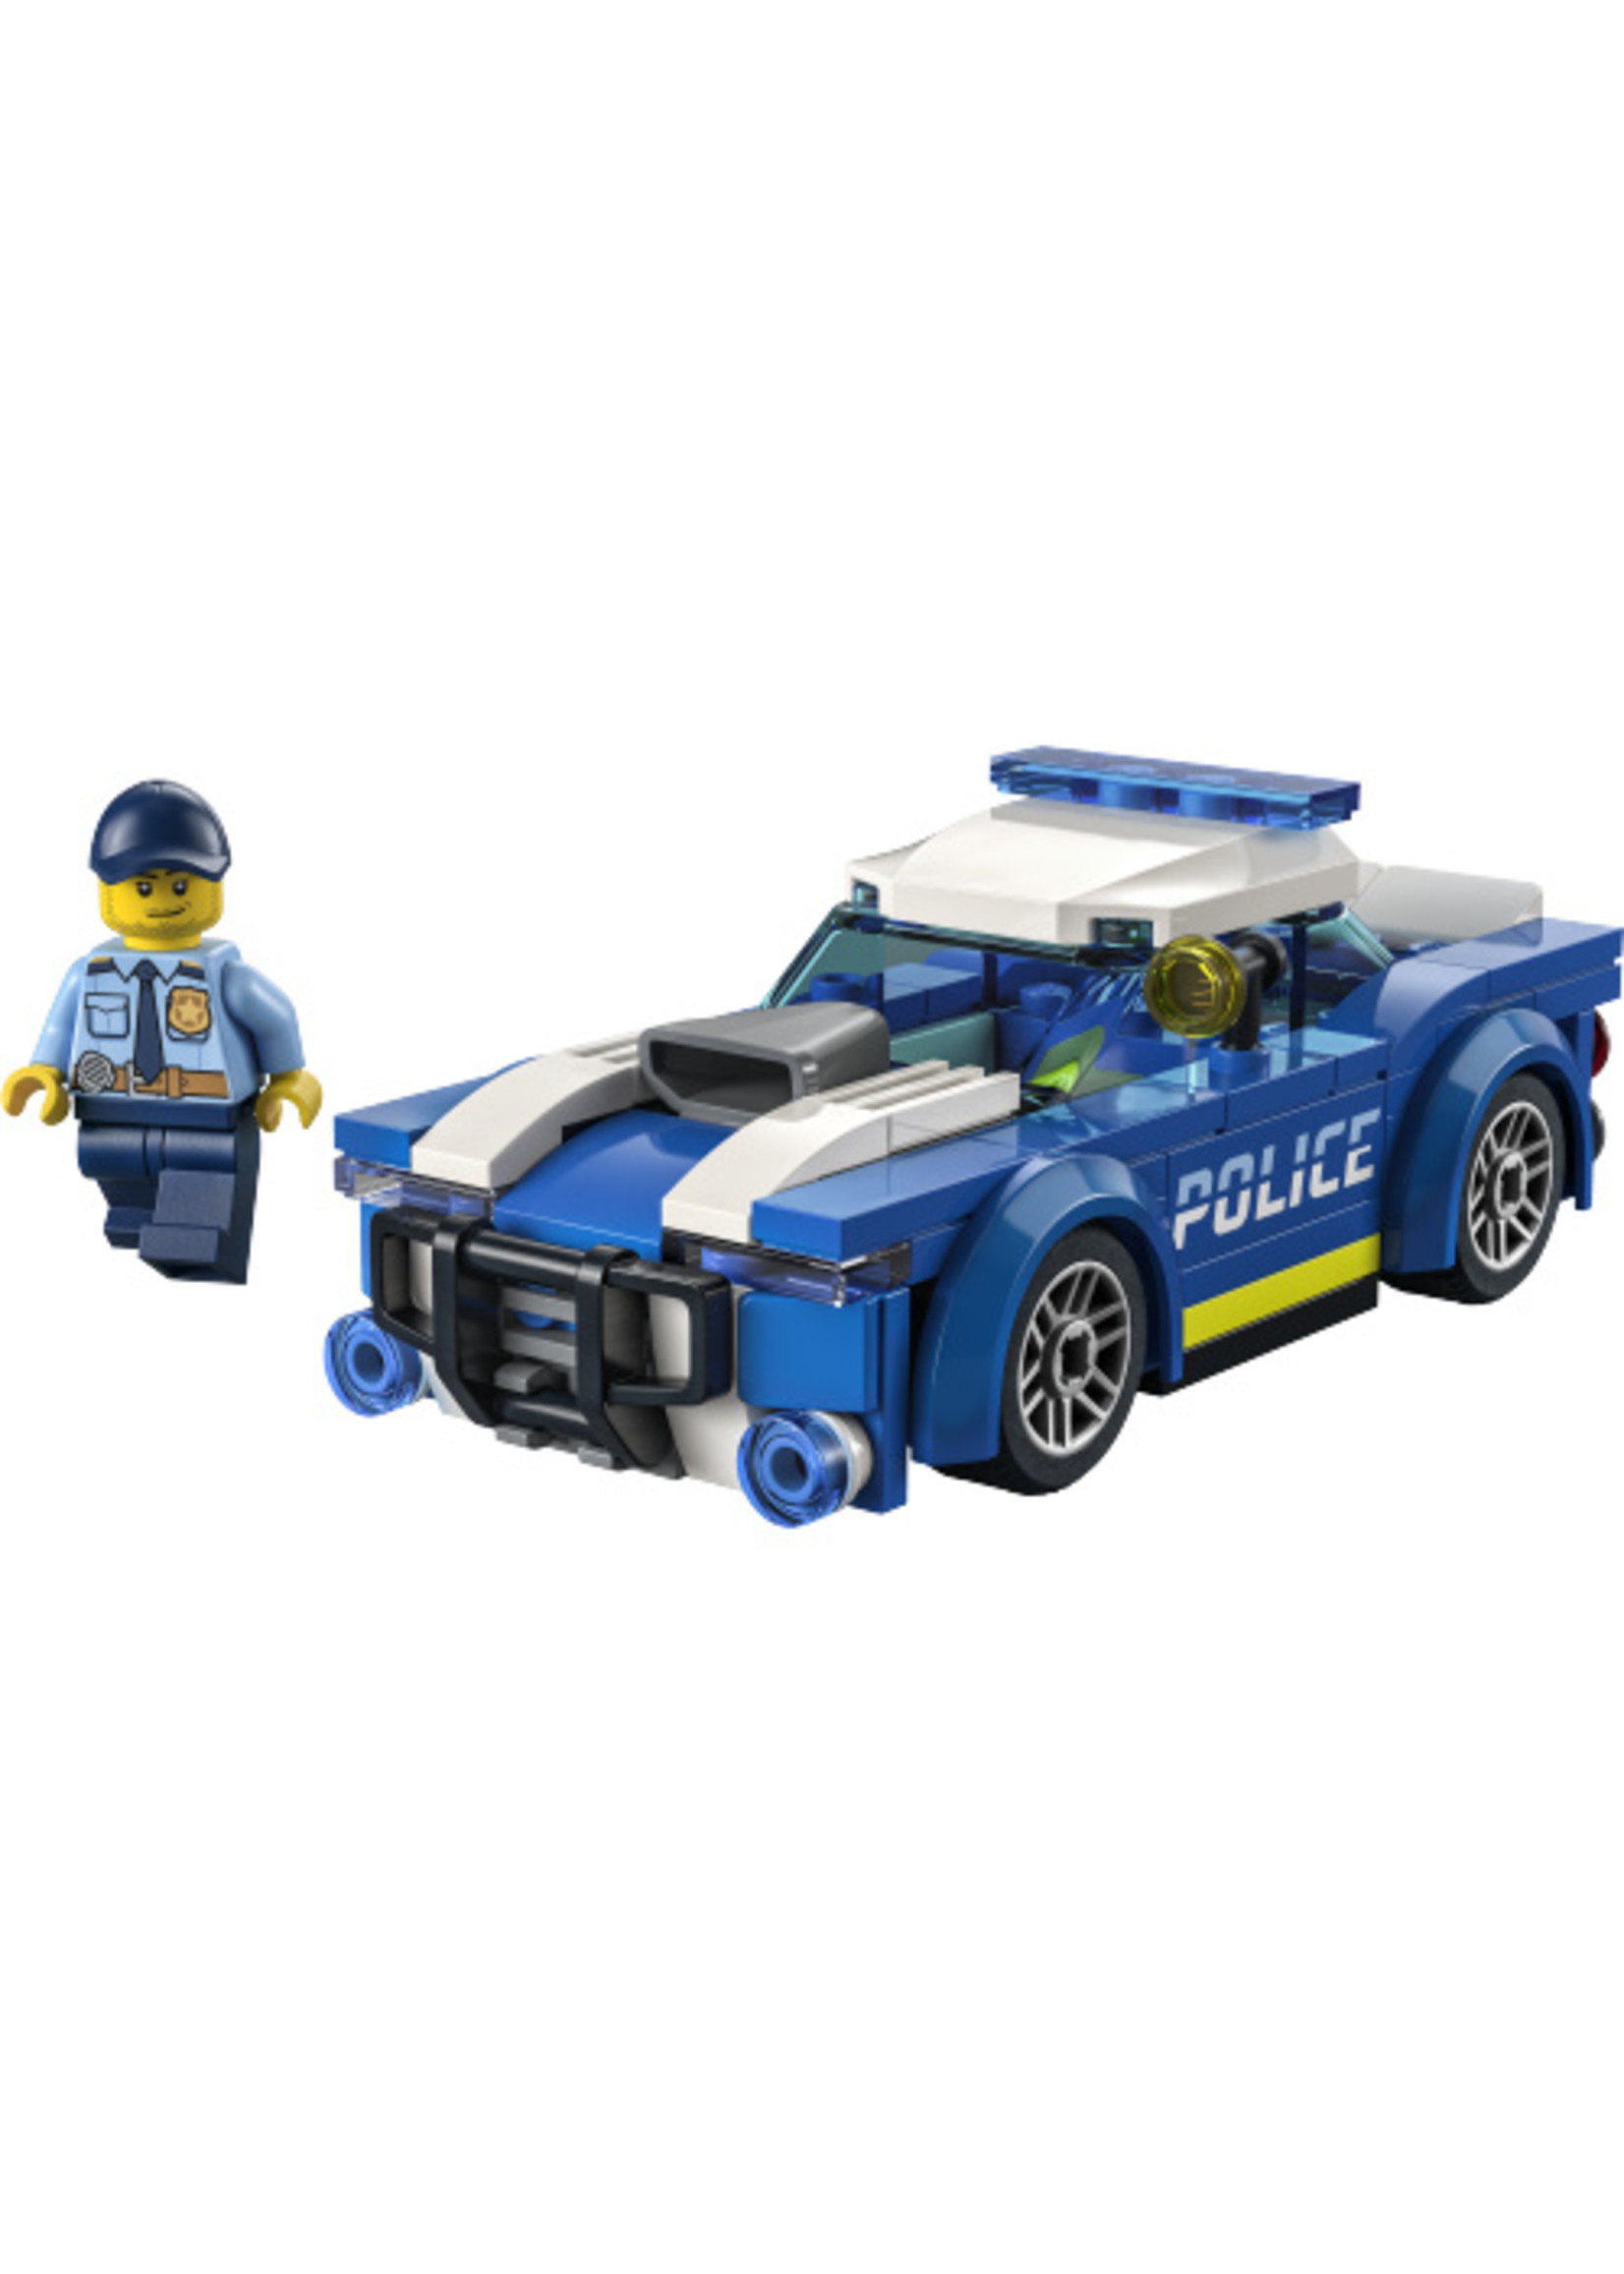 LEGO 60312 - Police Car